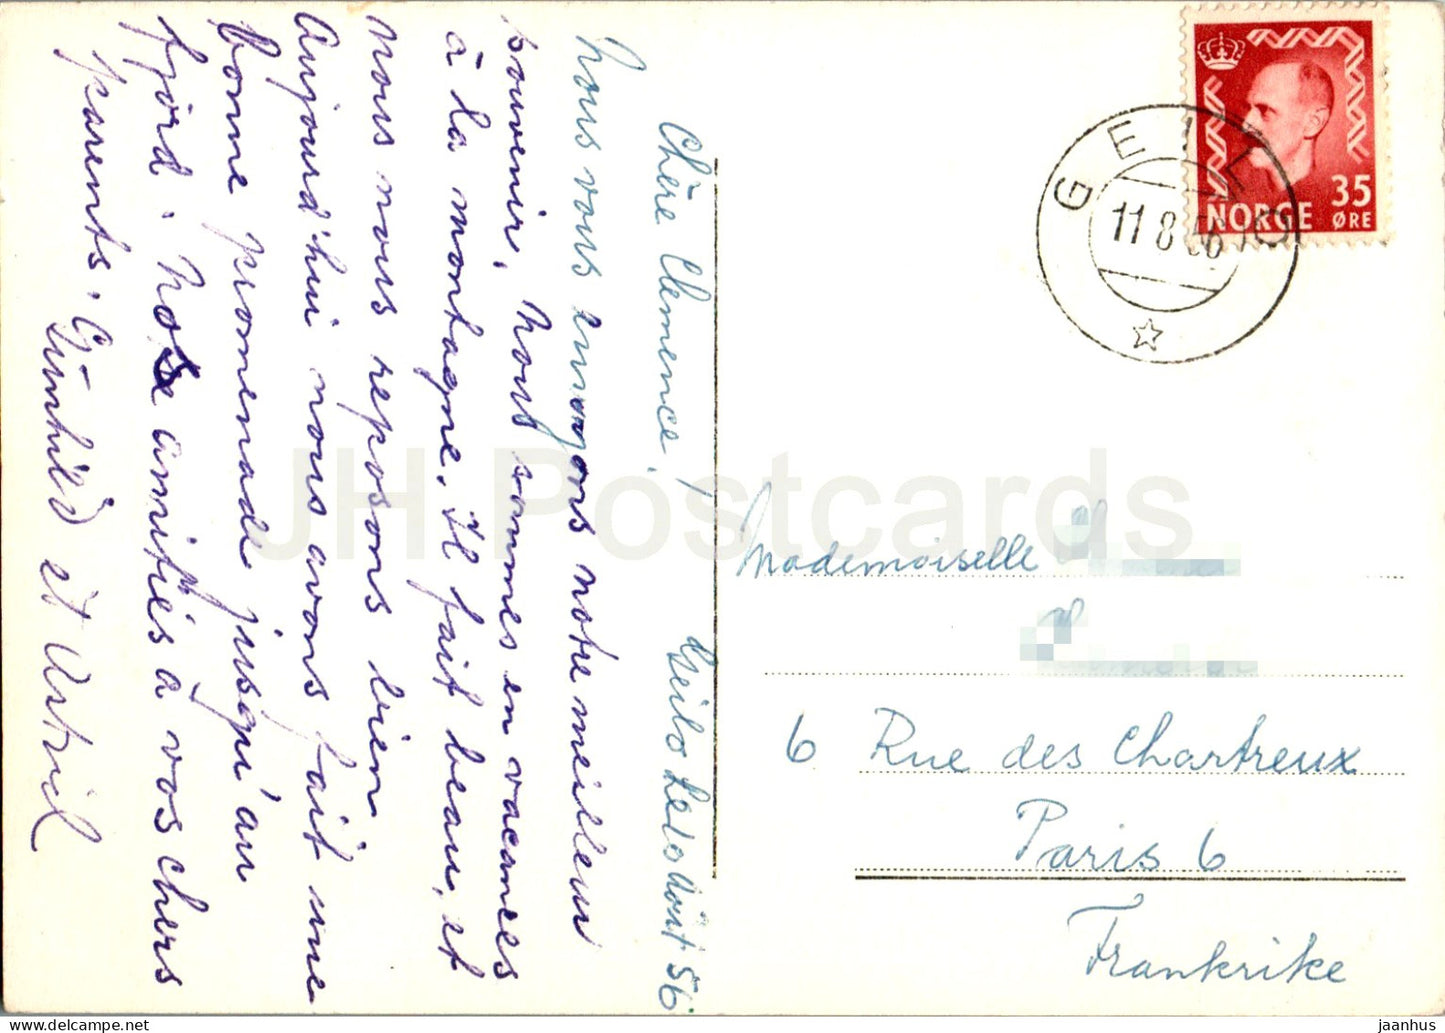 Haugastel - Eldfjord - alte Postkarte - 1956 - Norwegen - gebraucht 